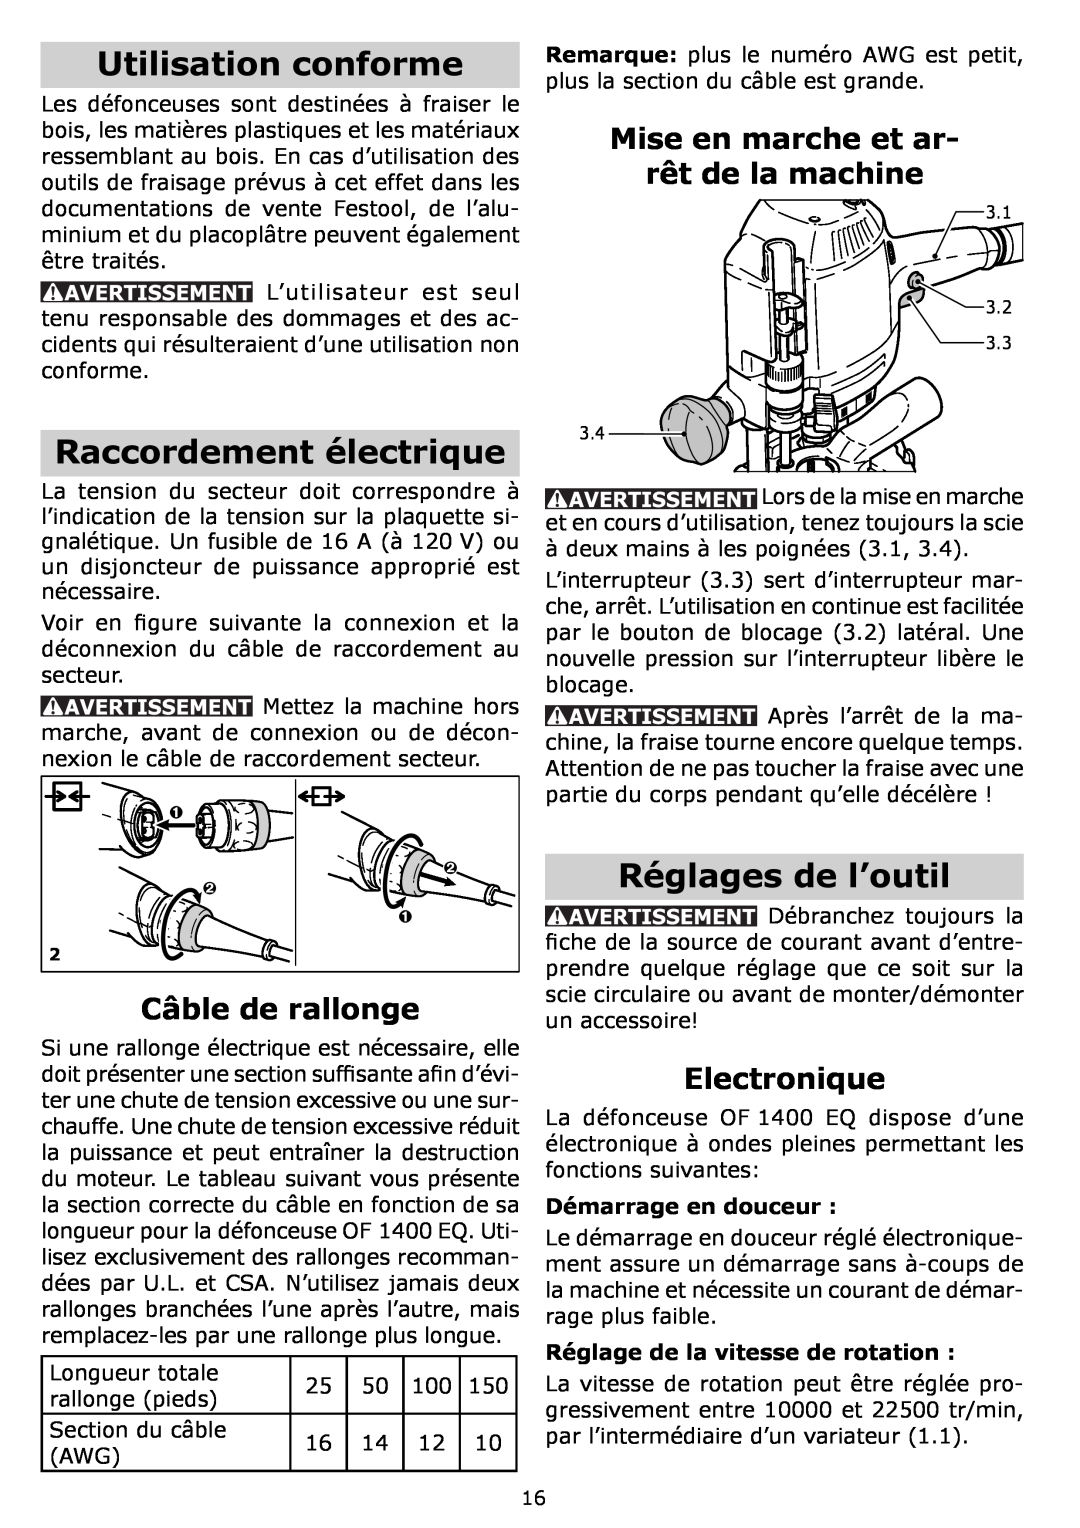 Festool PI574342 Utilisation conforme, Raccordement électrique, Réglages de l’outil, Câble de rallonge, Electronique 